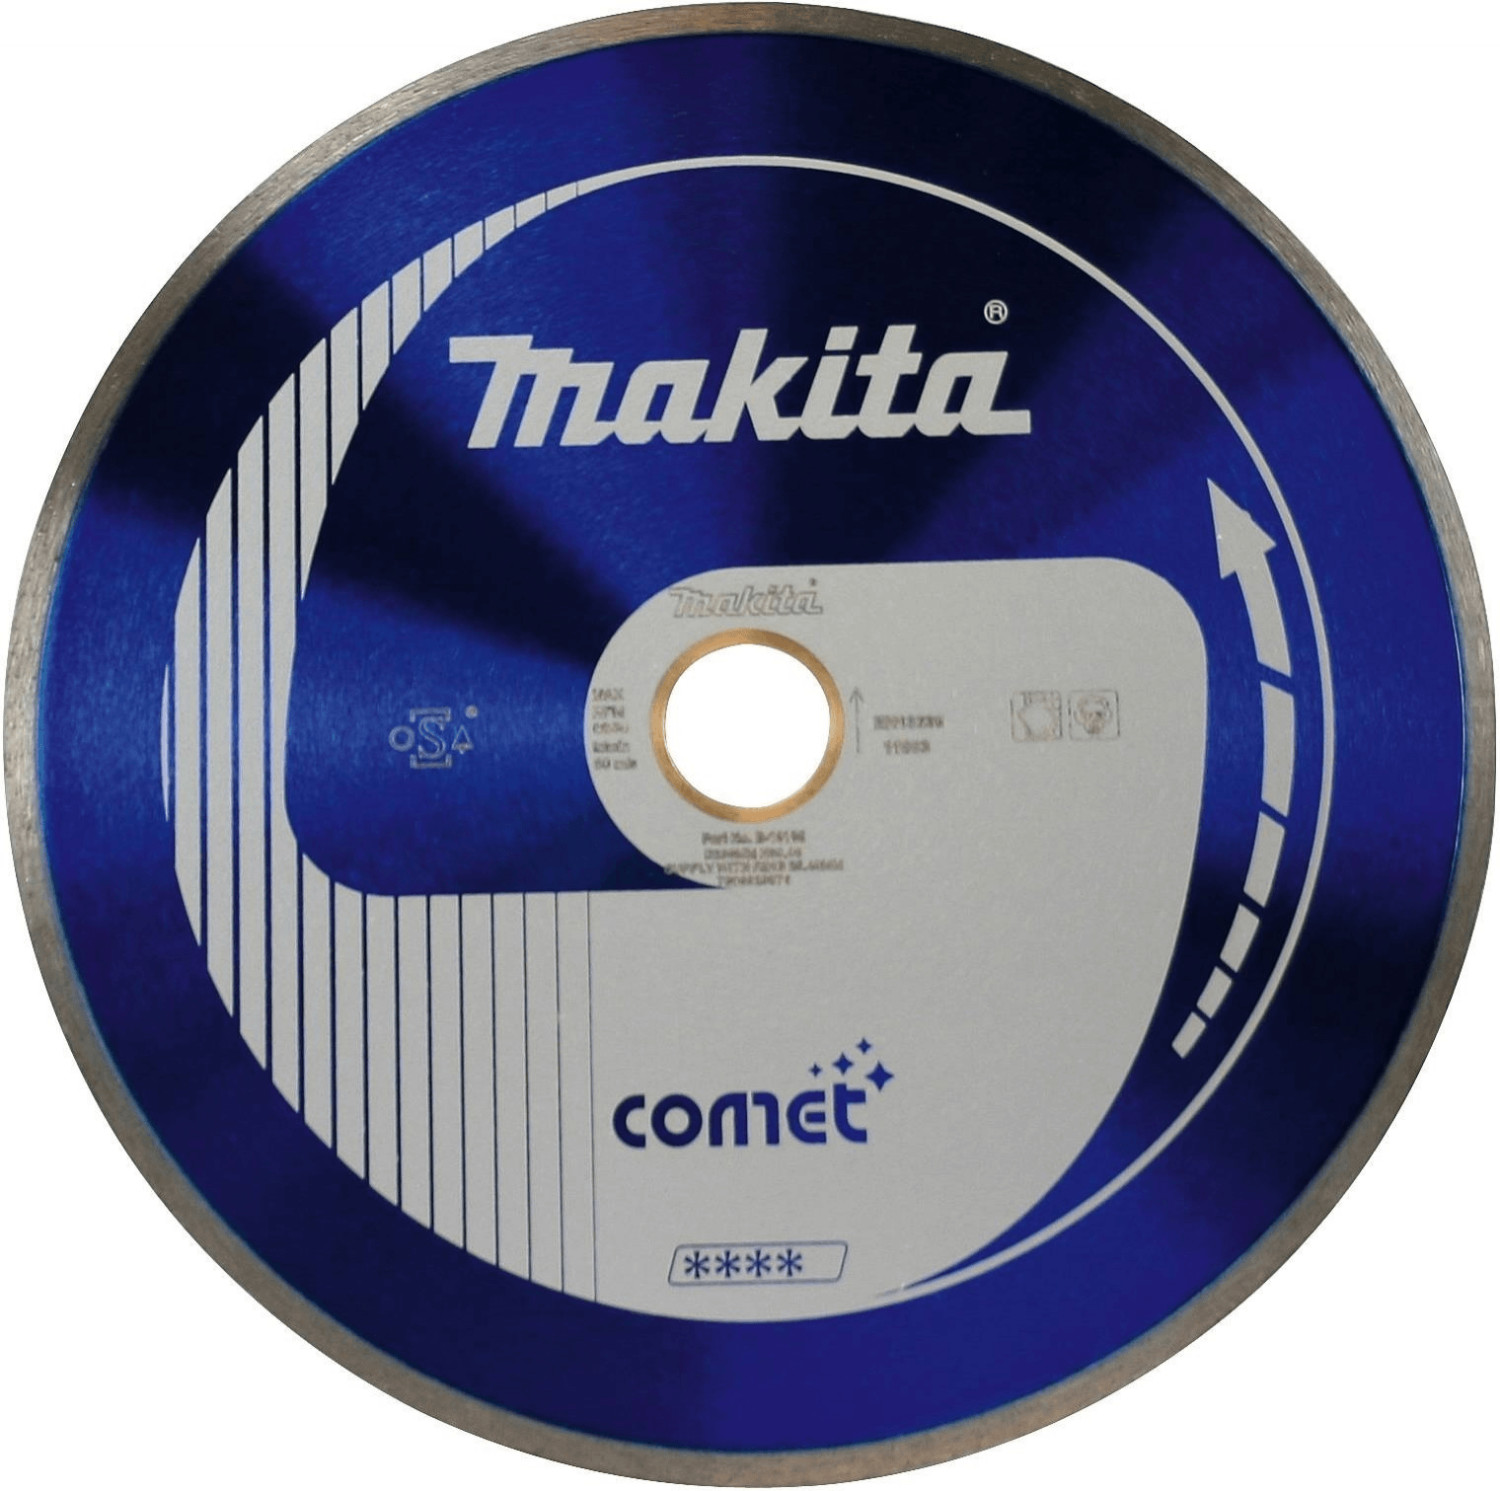 Makita B-13091